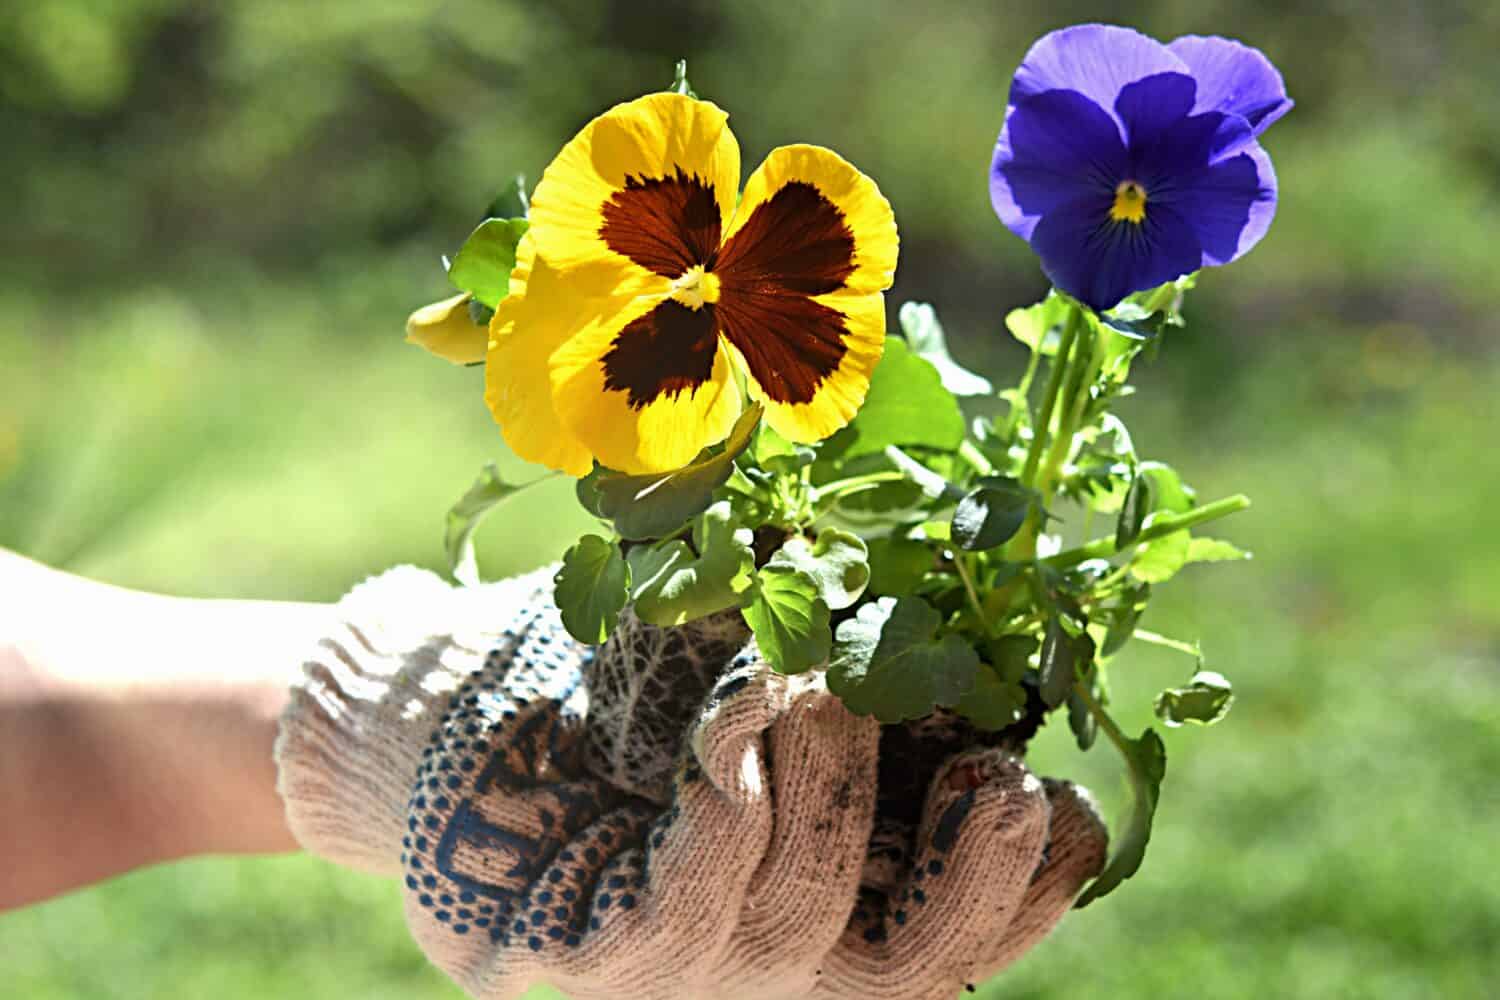 giardinaggio.  piantare fiori.  mani guantate stanno piantando fiori viola del pensiero.  perenni